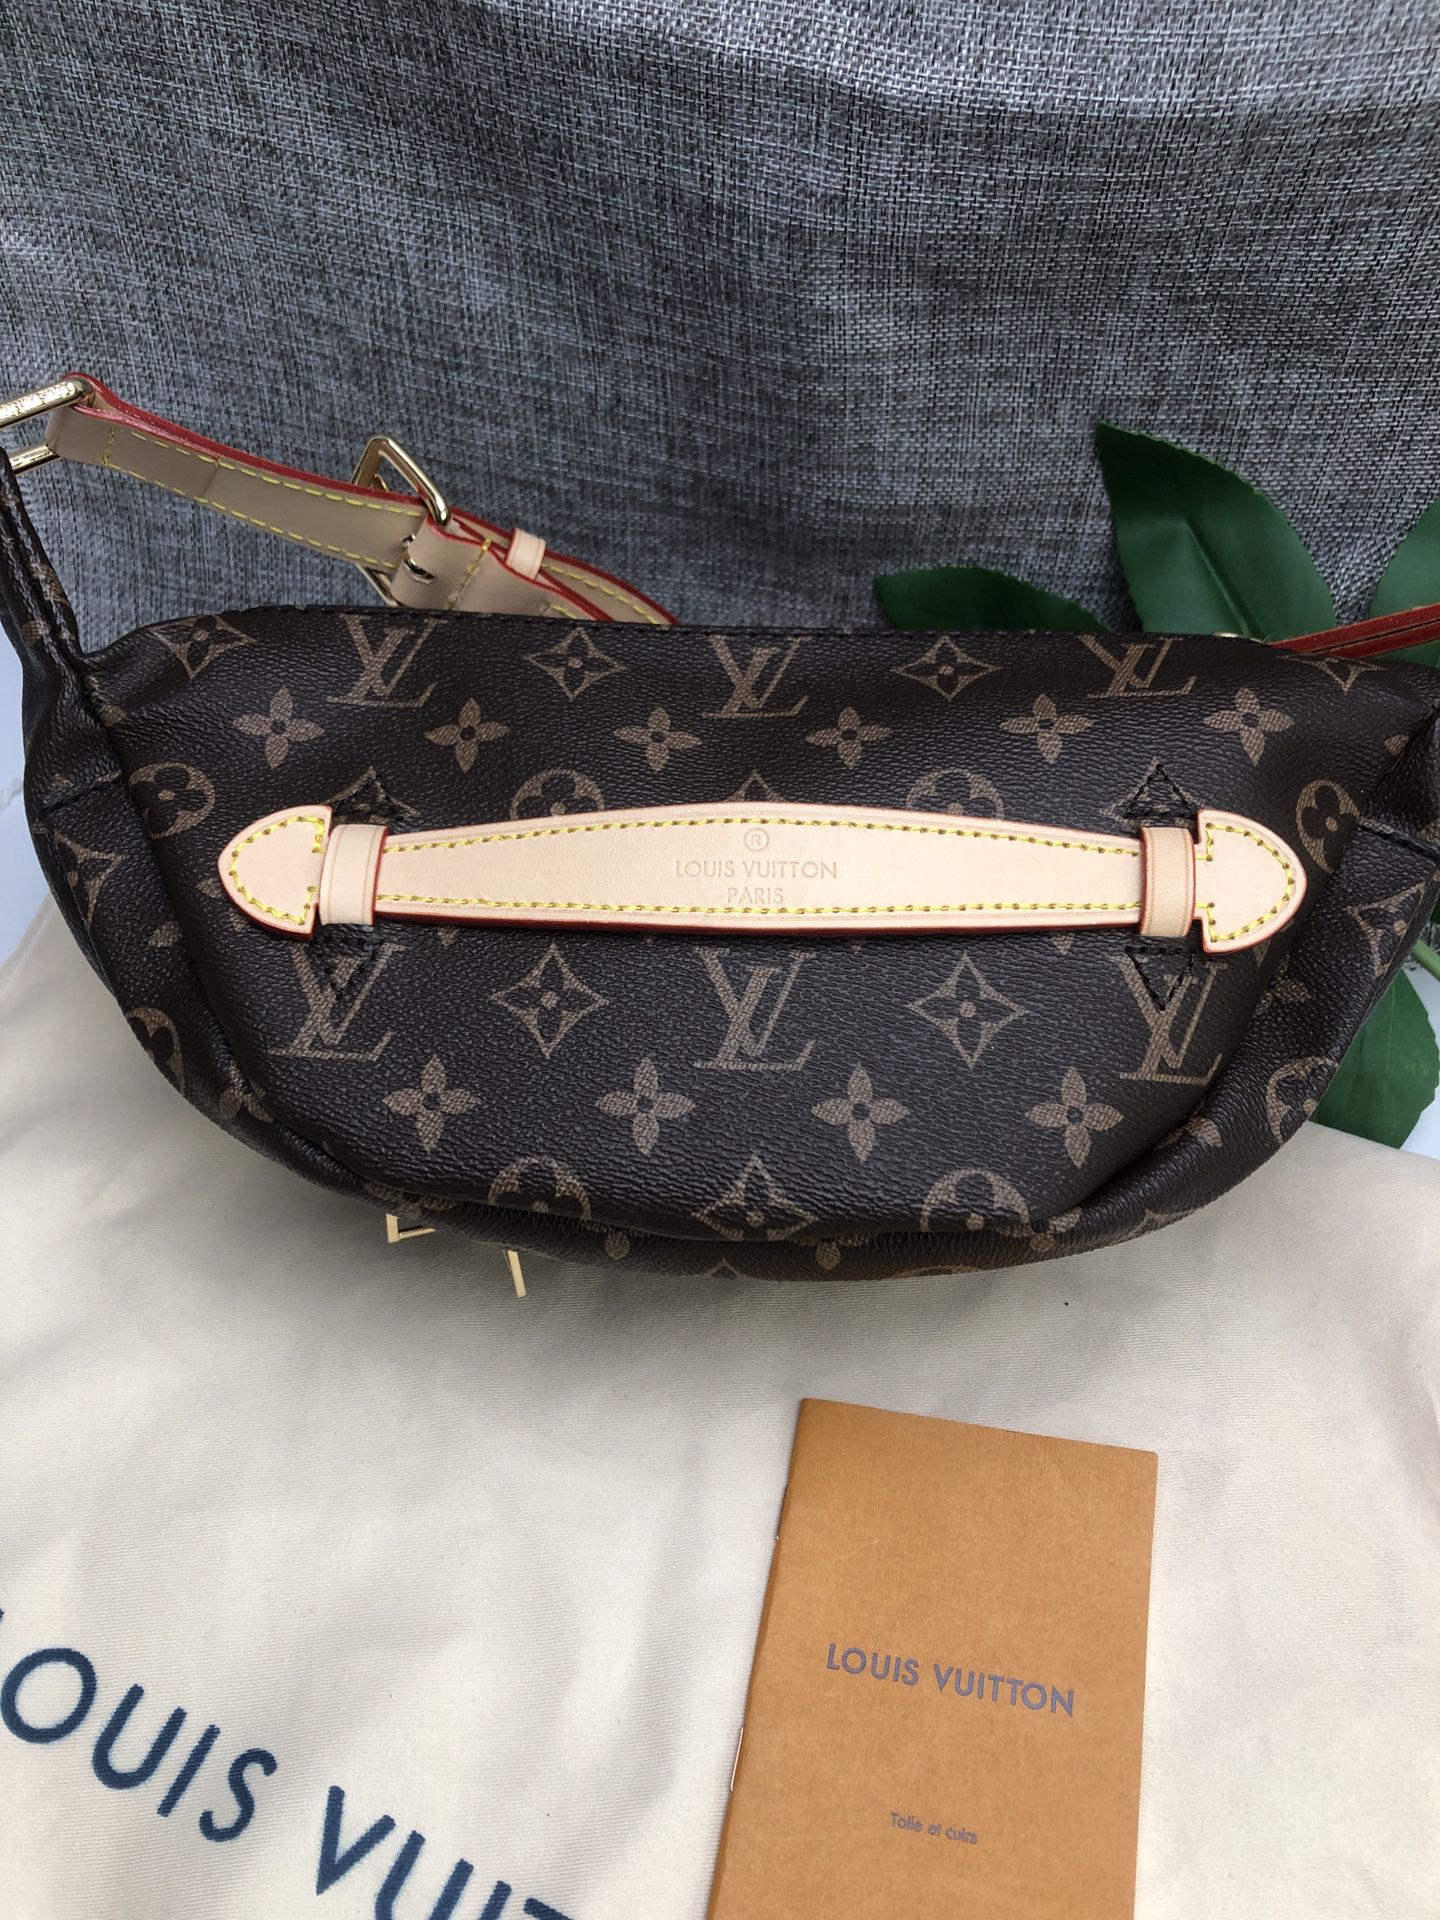 Louis Vuitton bag old flower waist bag brown shoulder bag handbag female  bag for Sale in Richmond, VA - OfferUp